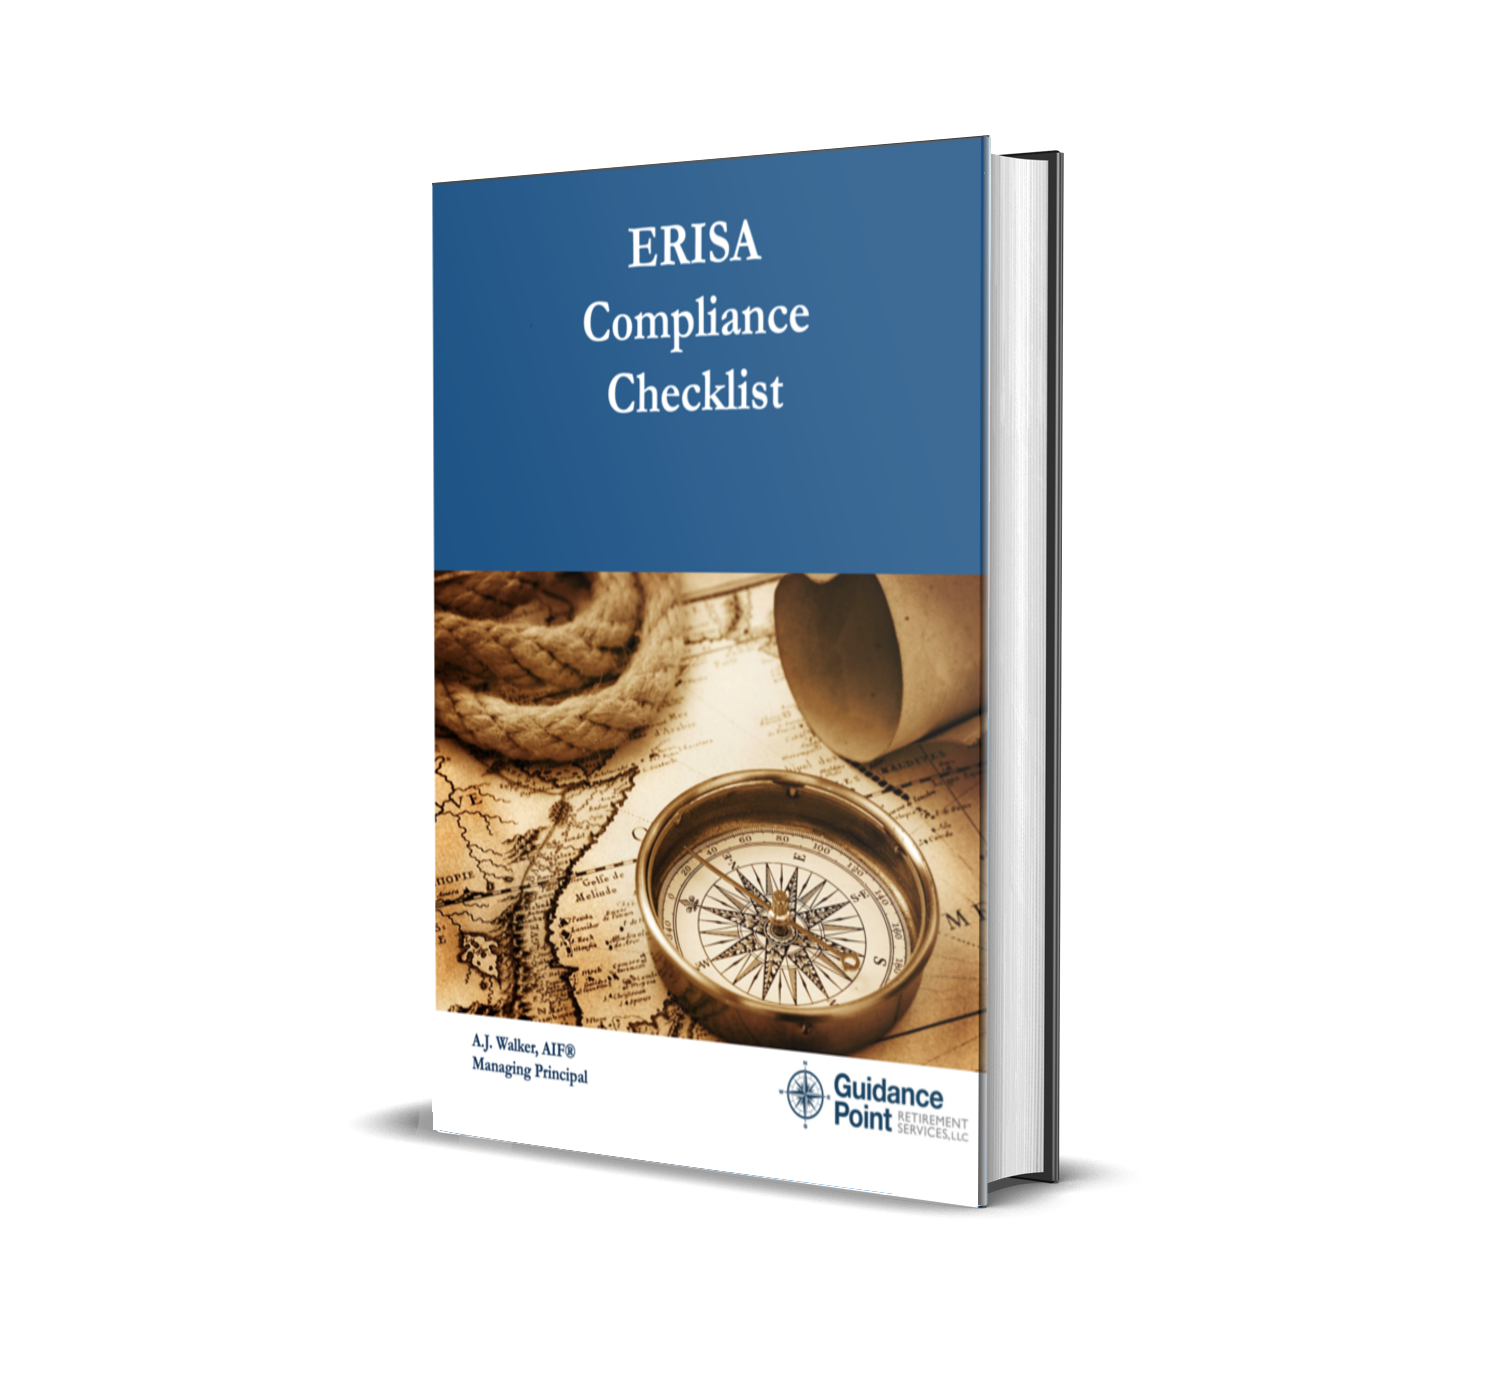 ERISA Compliance Checklist